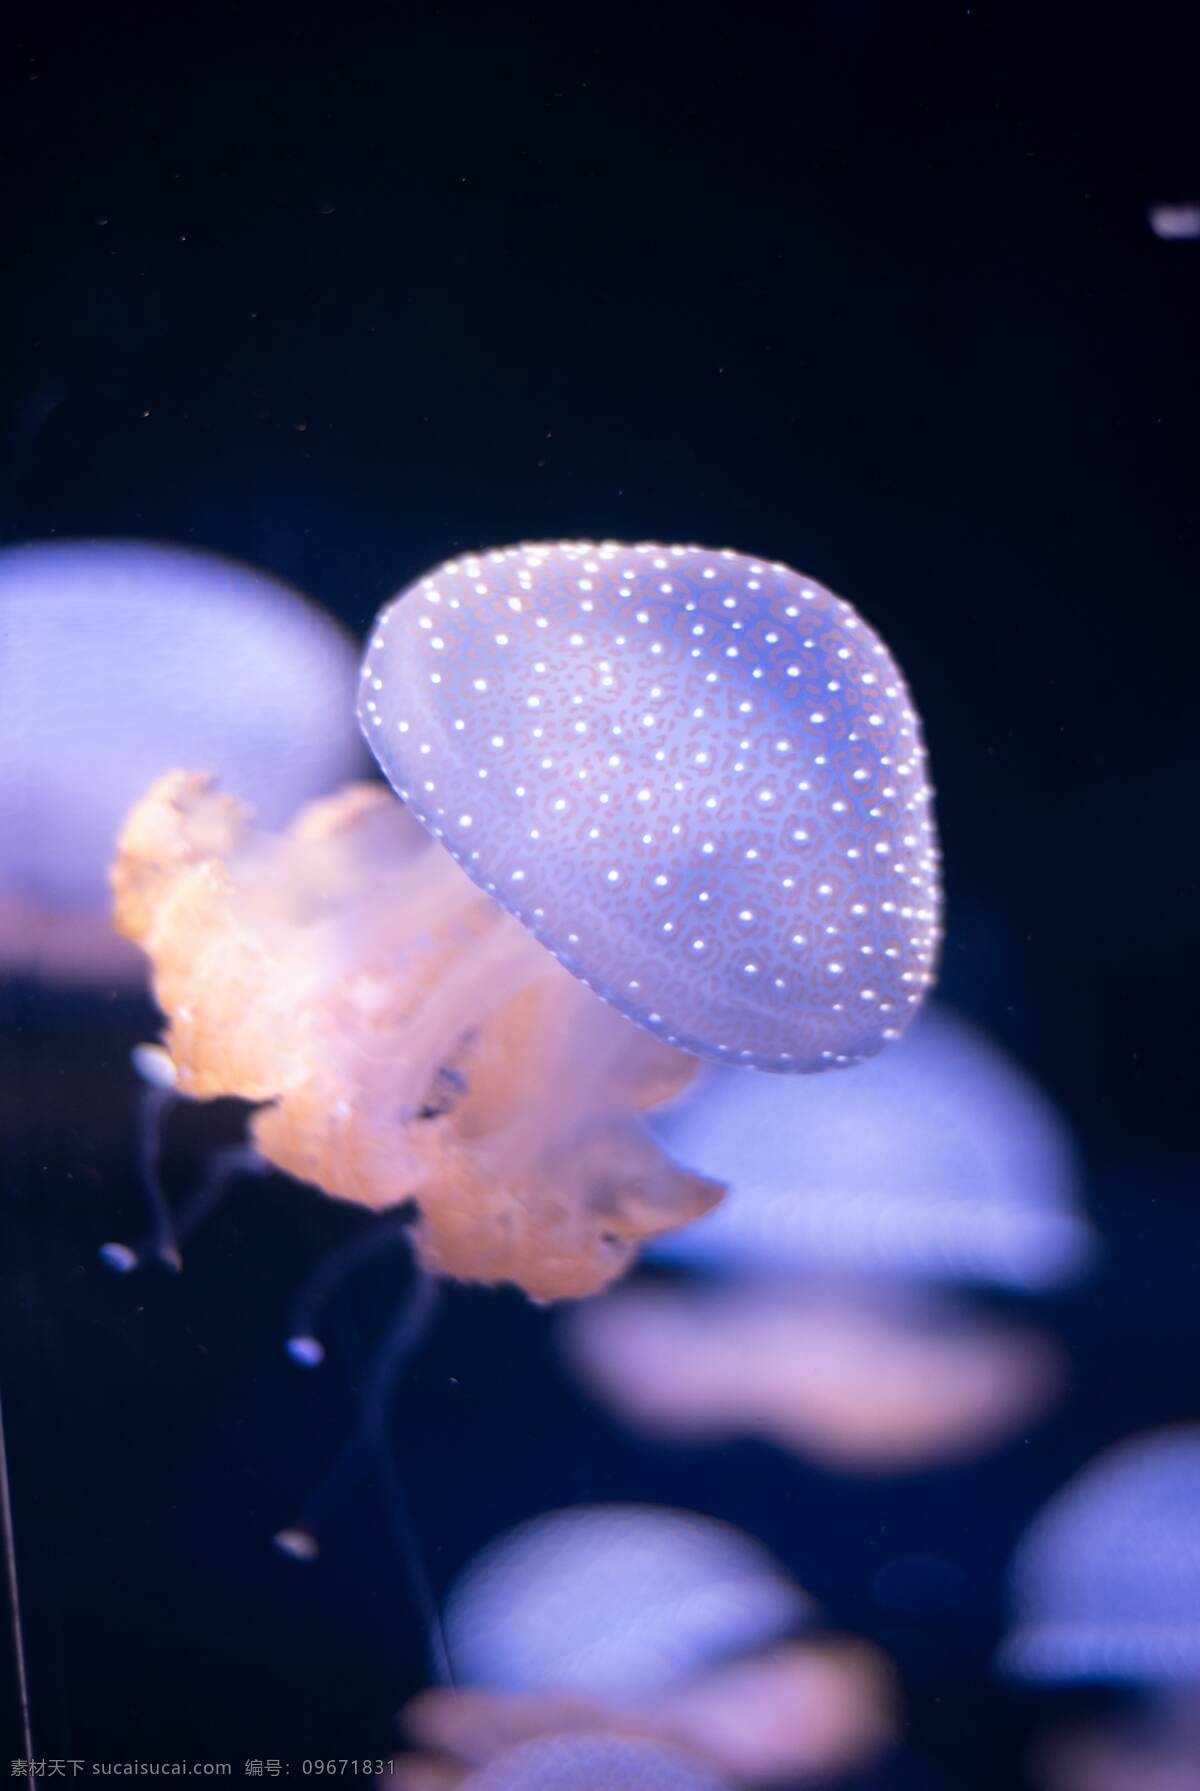 海蜇 海 大海 触须 海洋 动物 水下 水族馆 特写 海洋世界 海底世界 美丽水母 海洋生物 自然动物 生物世界